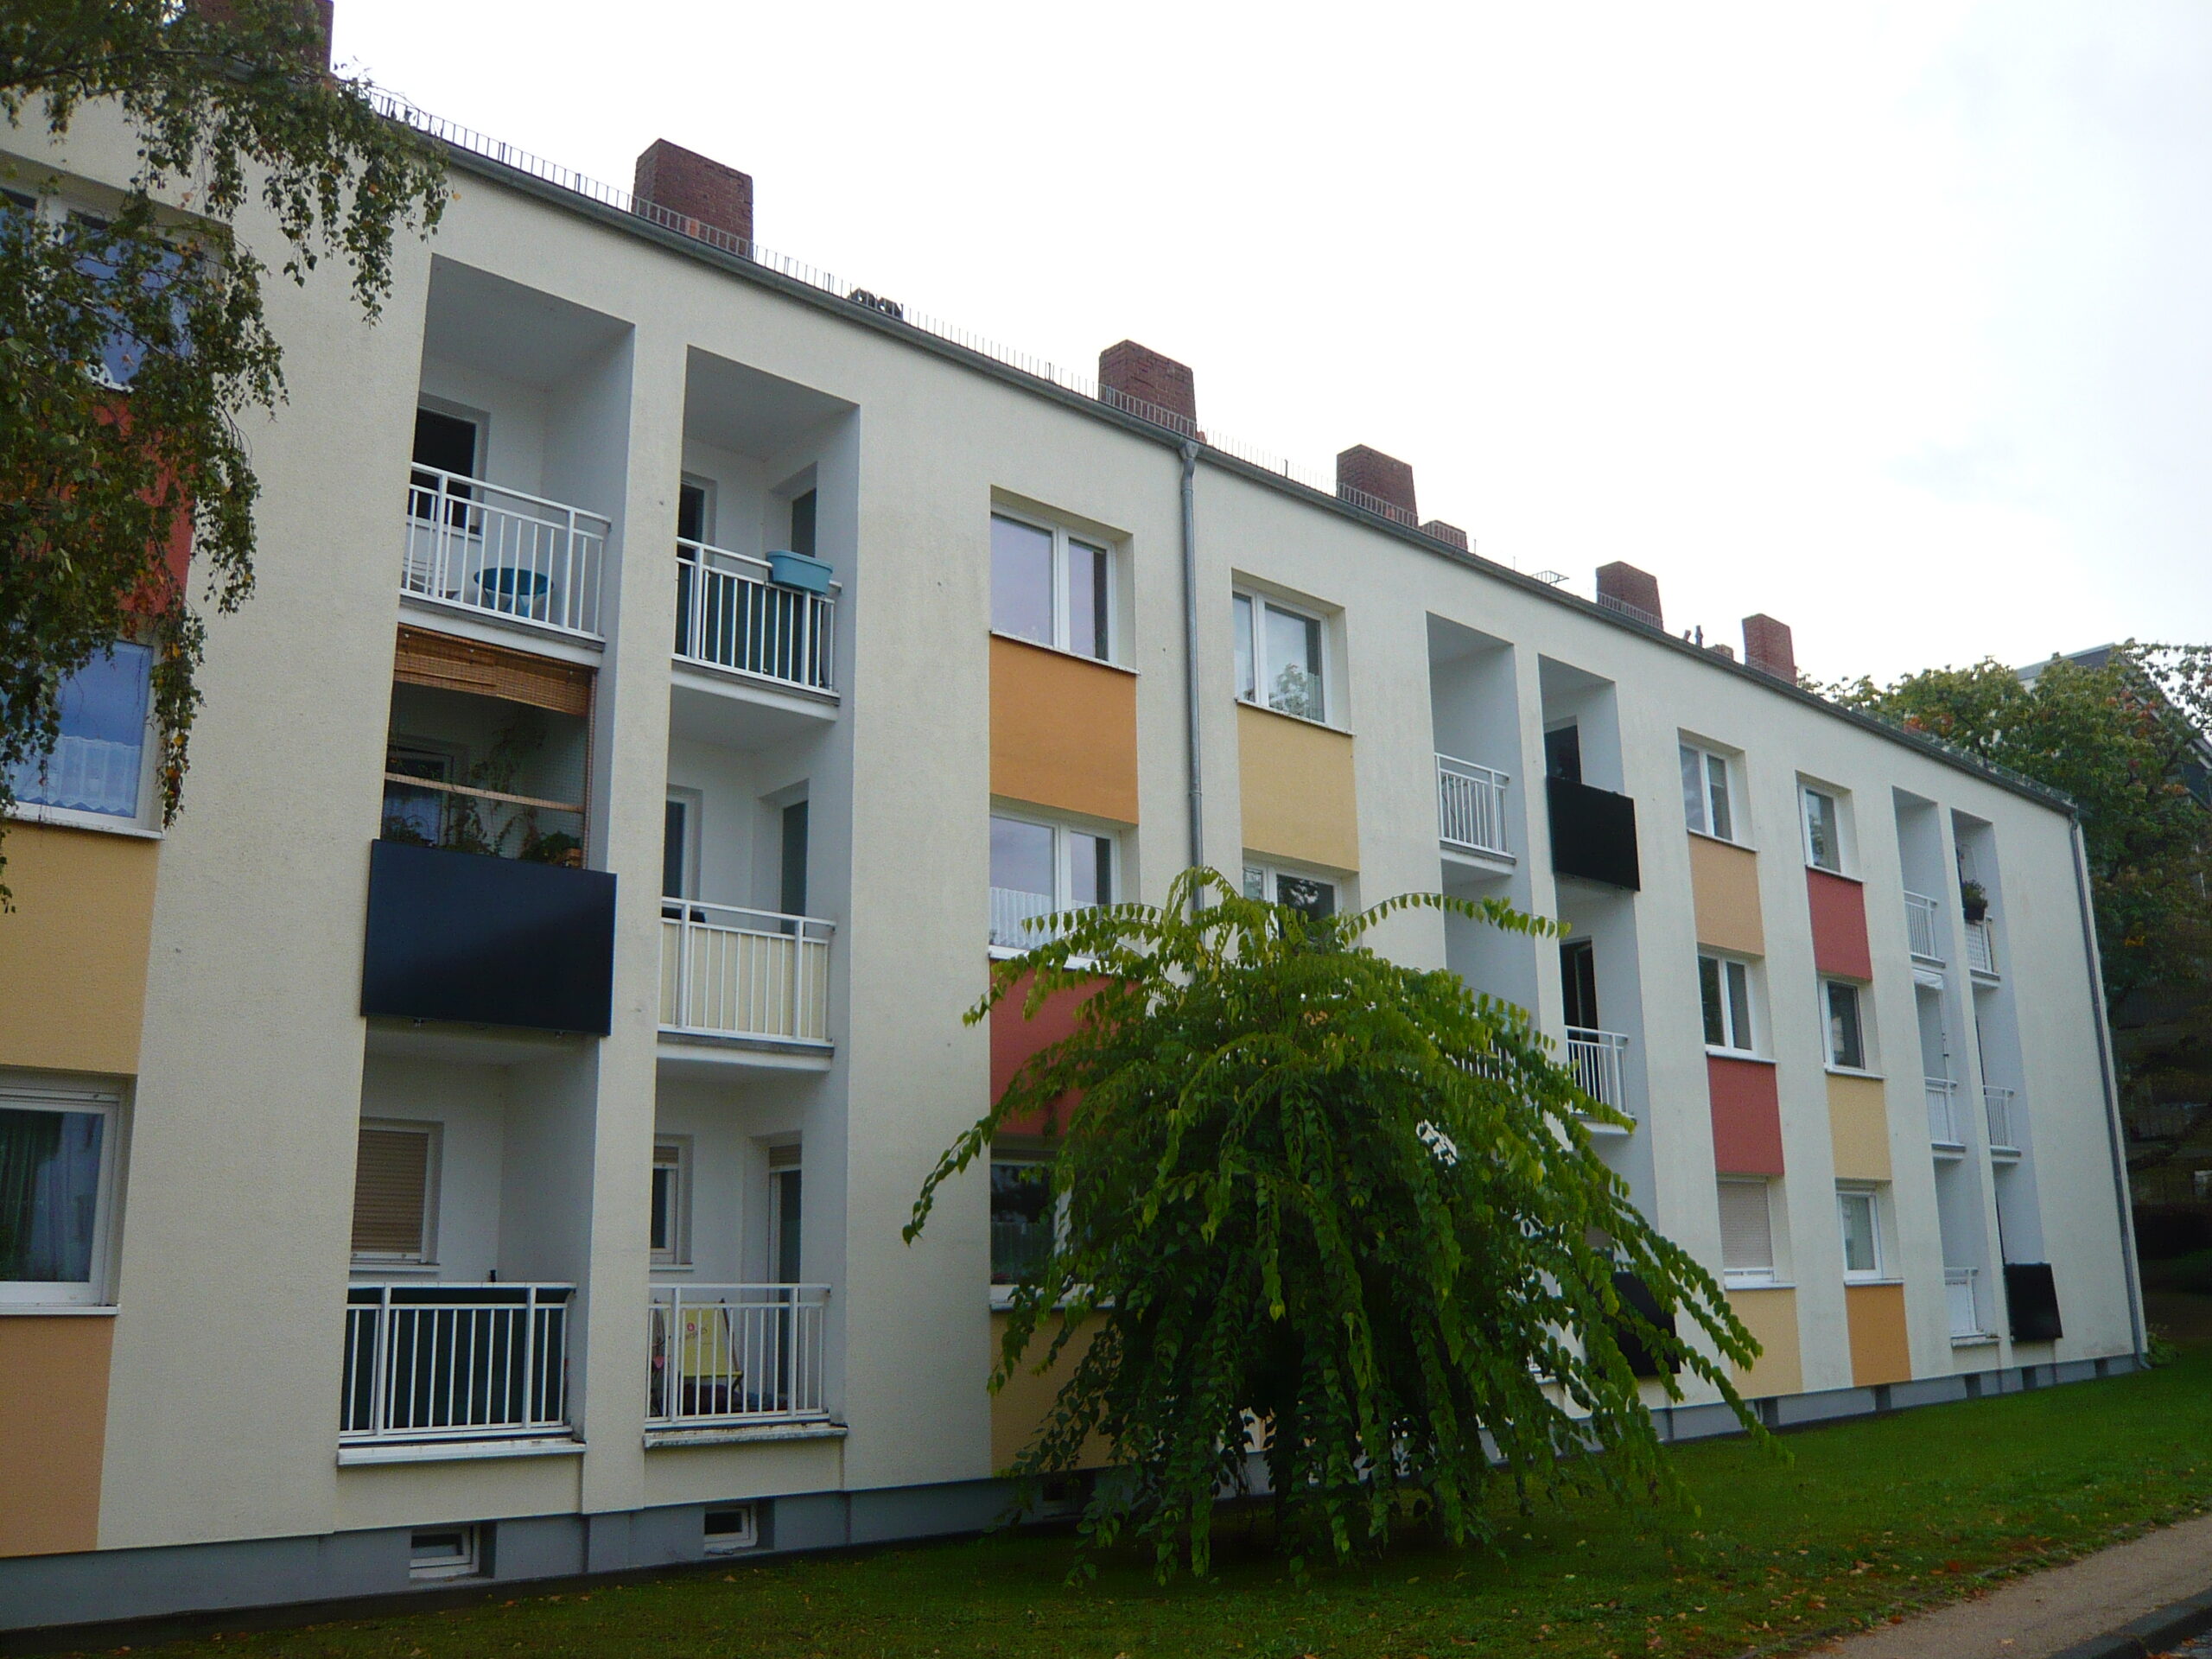 Read more about the article Quartier: Tolles städtisches Förderprogramm sorgt für Solar-Zuwachs